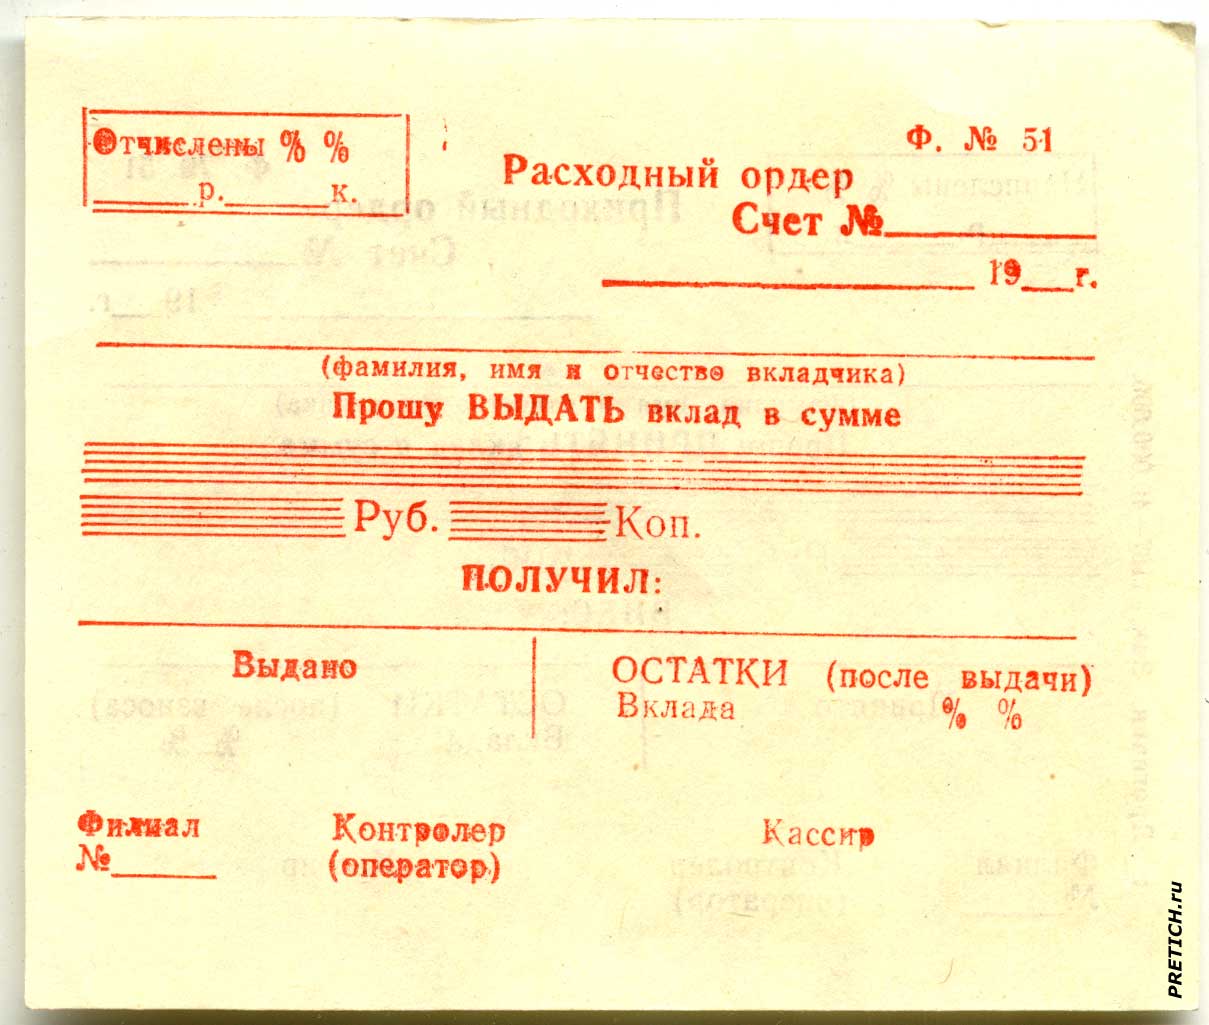 Расходный ордер Банка СССР, форма №51 - бланк